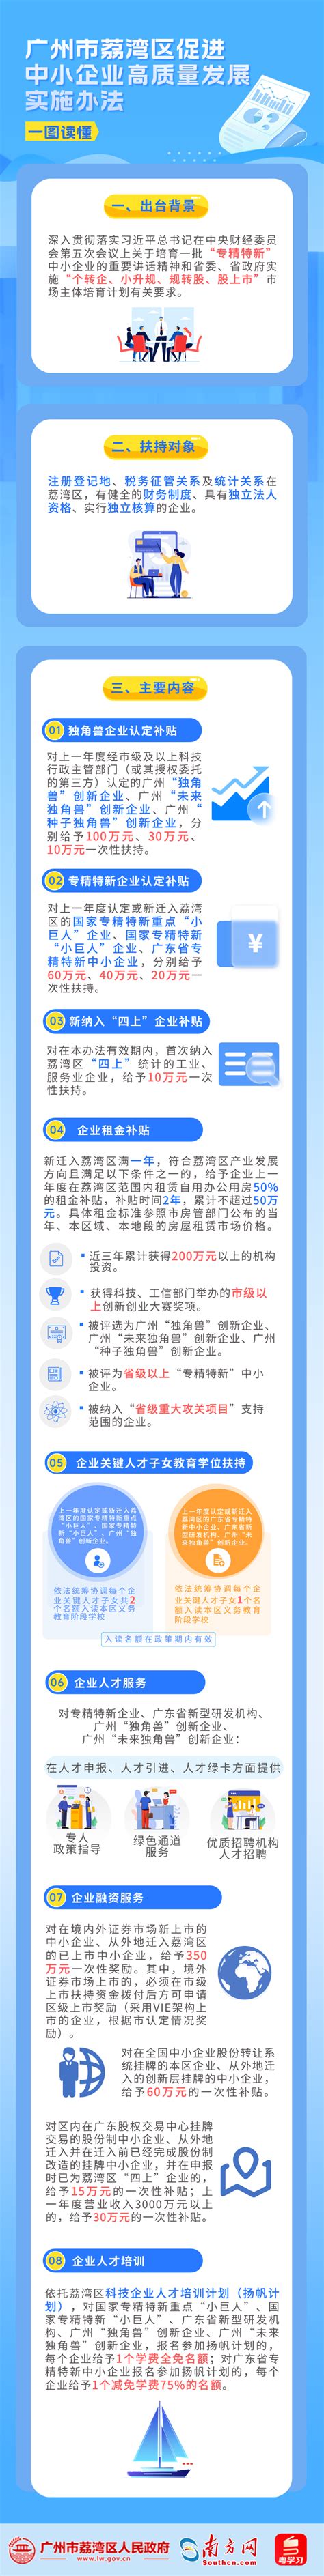 2021年荔湾区国民经济和社会发展统计公报 广州市荔湾区人民政府门户网站